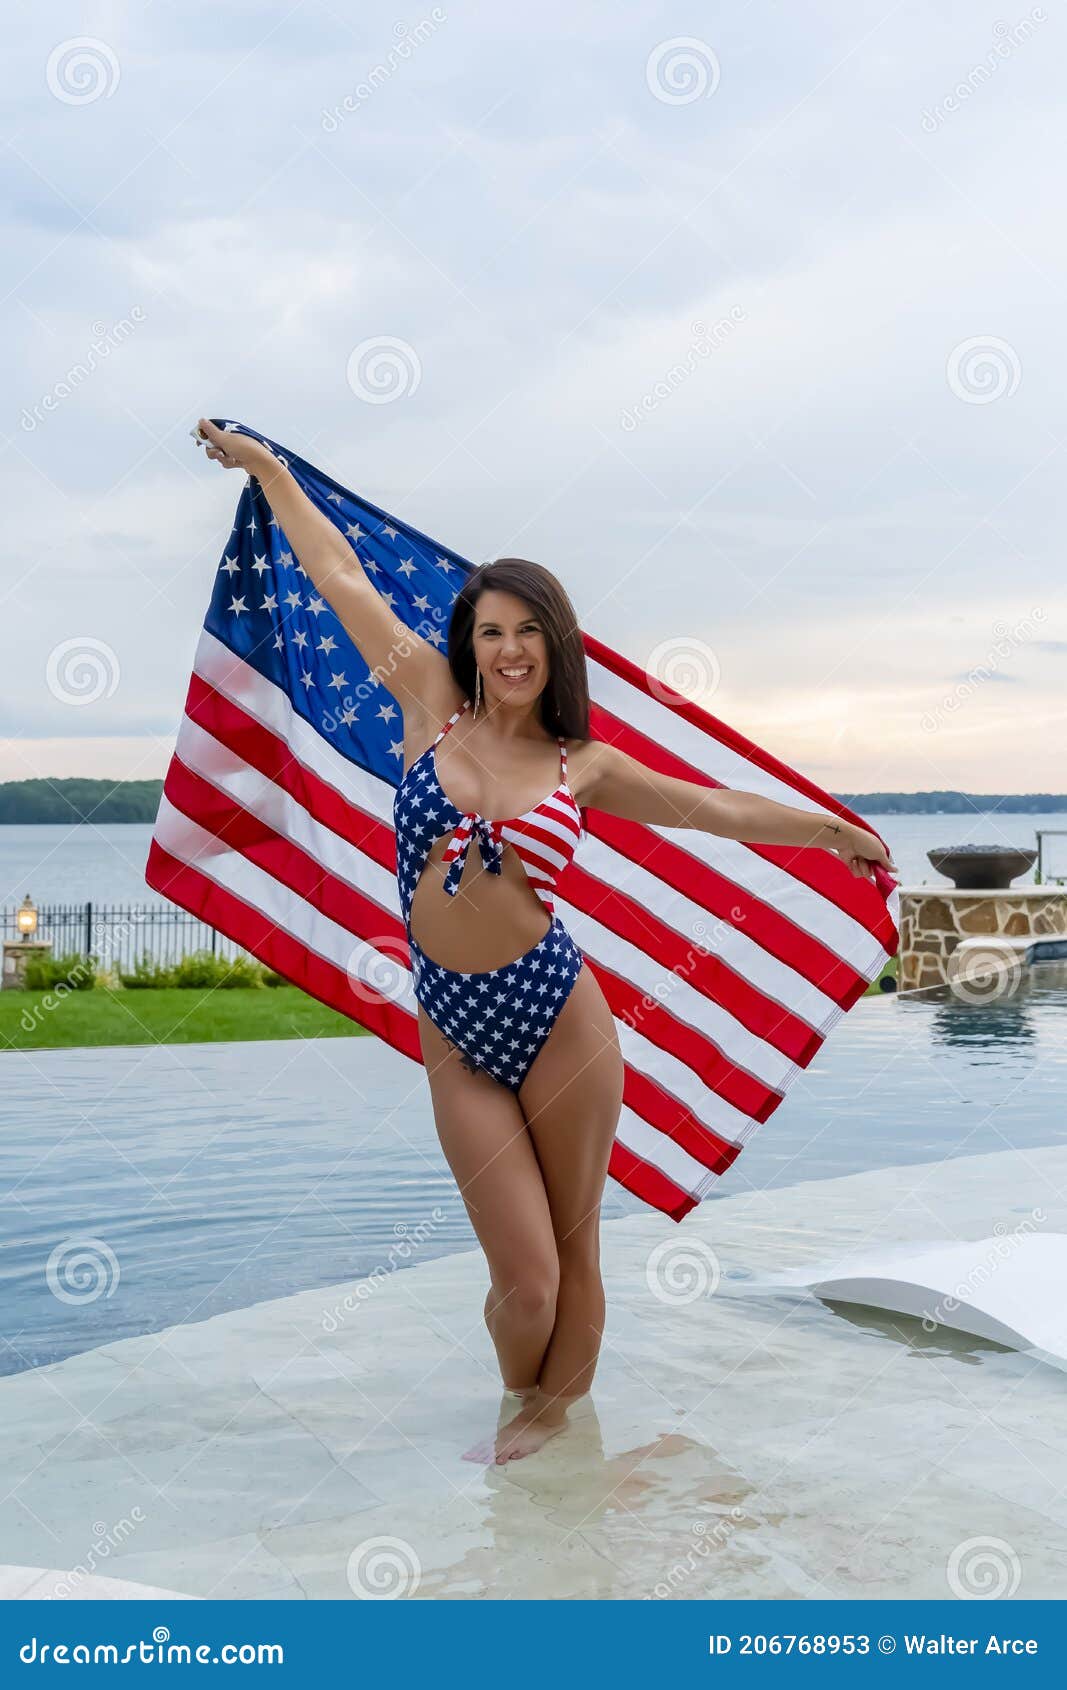 Obediente Tender Actuación Mujer Patriótica Con Traje De Baño Bikini Imagen de archivo - Imagen de  oscuro, encantador: 206768953